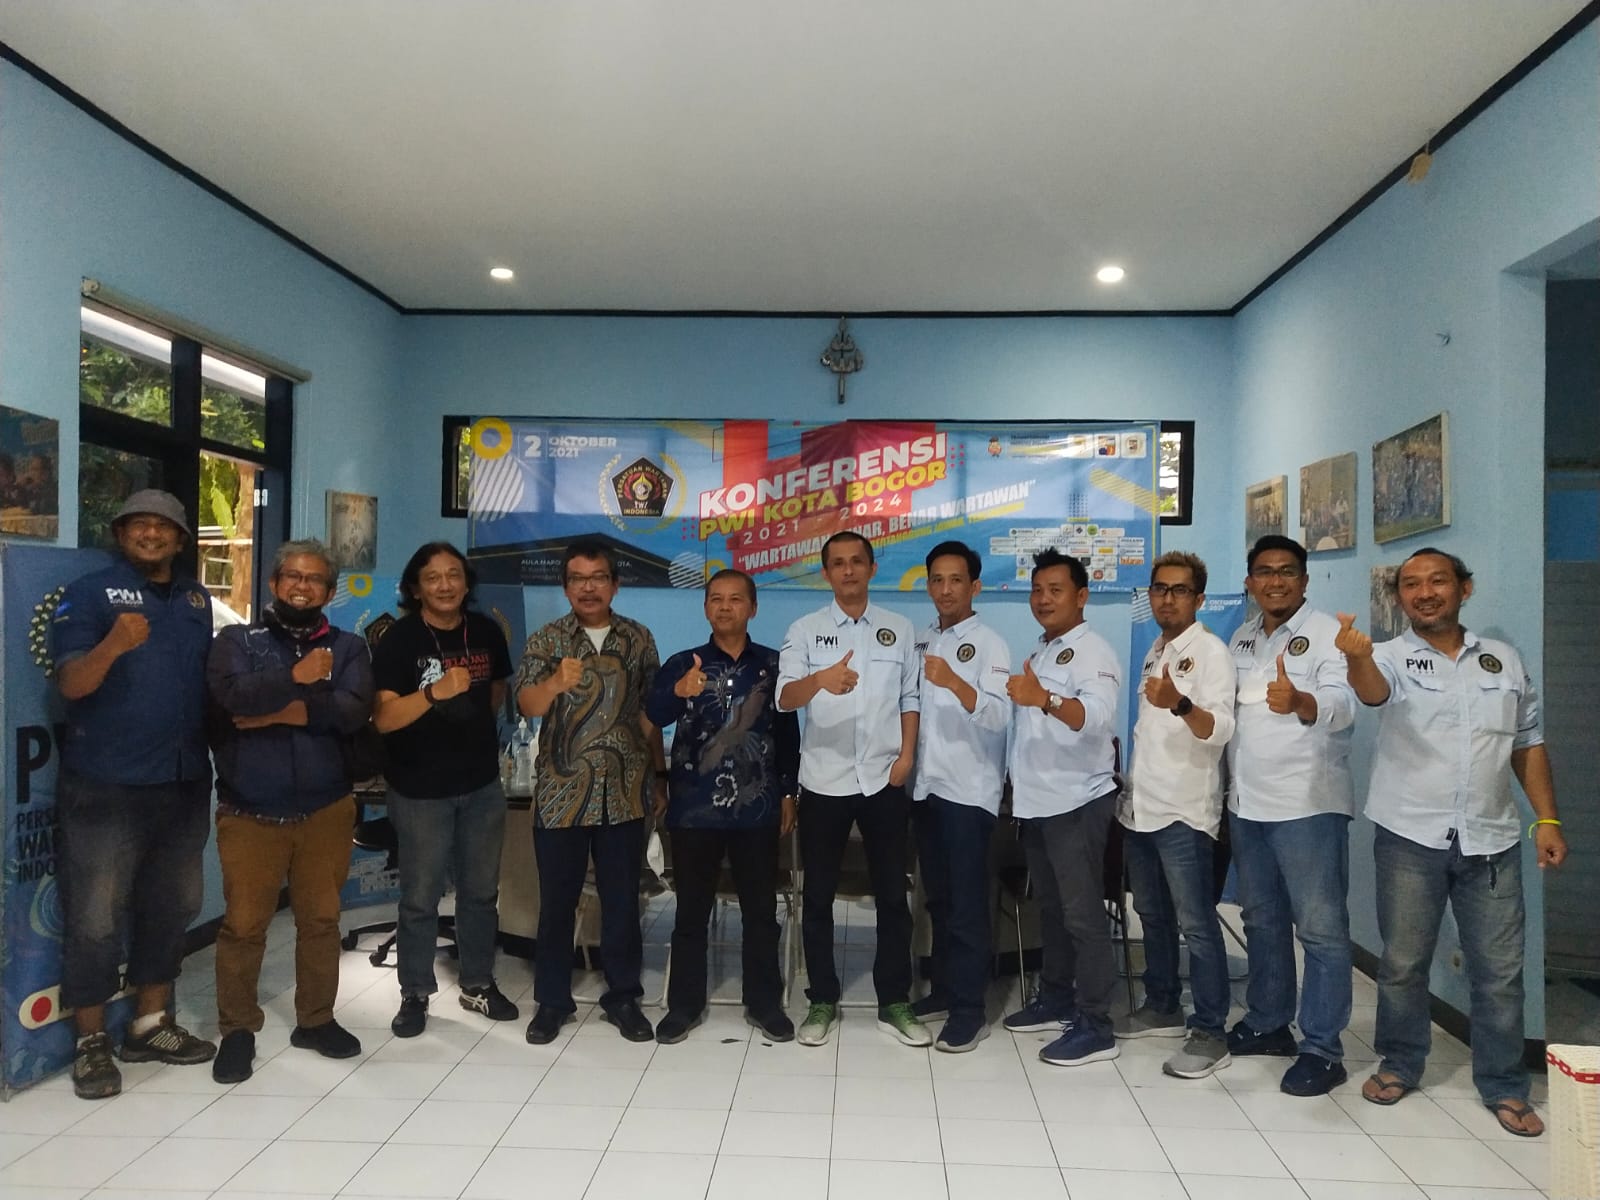 Kunjungi PWI Kota Bogor, Dar Edi Yoga Sosialisasikan JKW-PWI